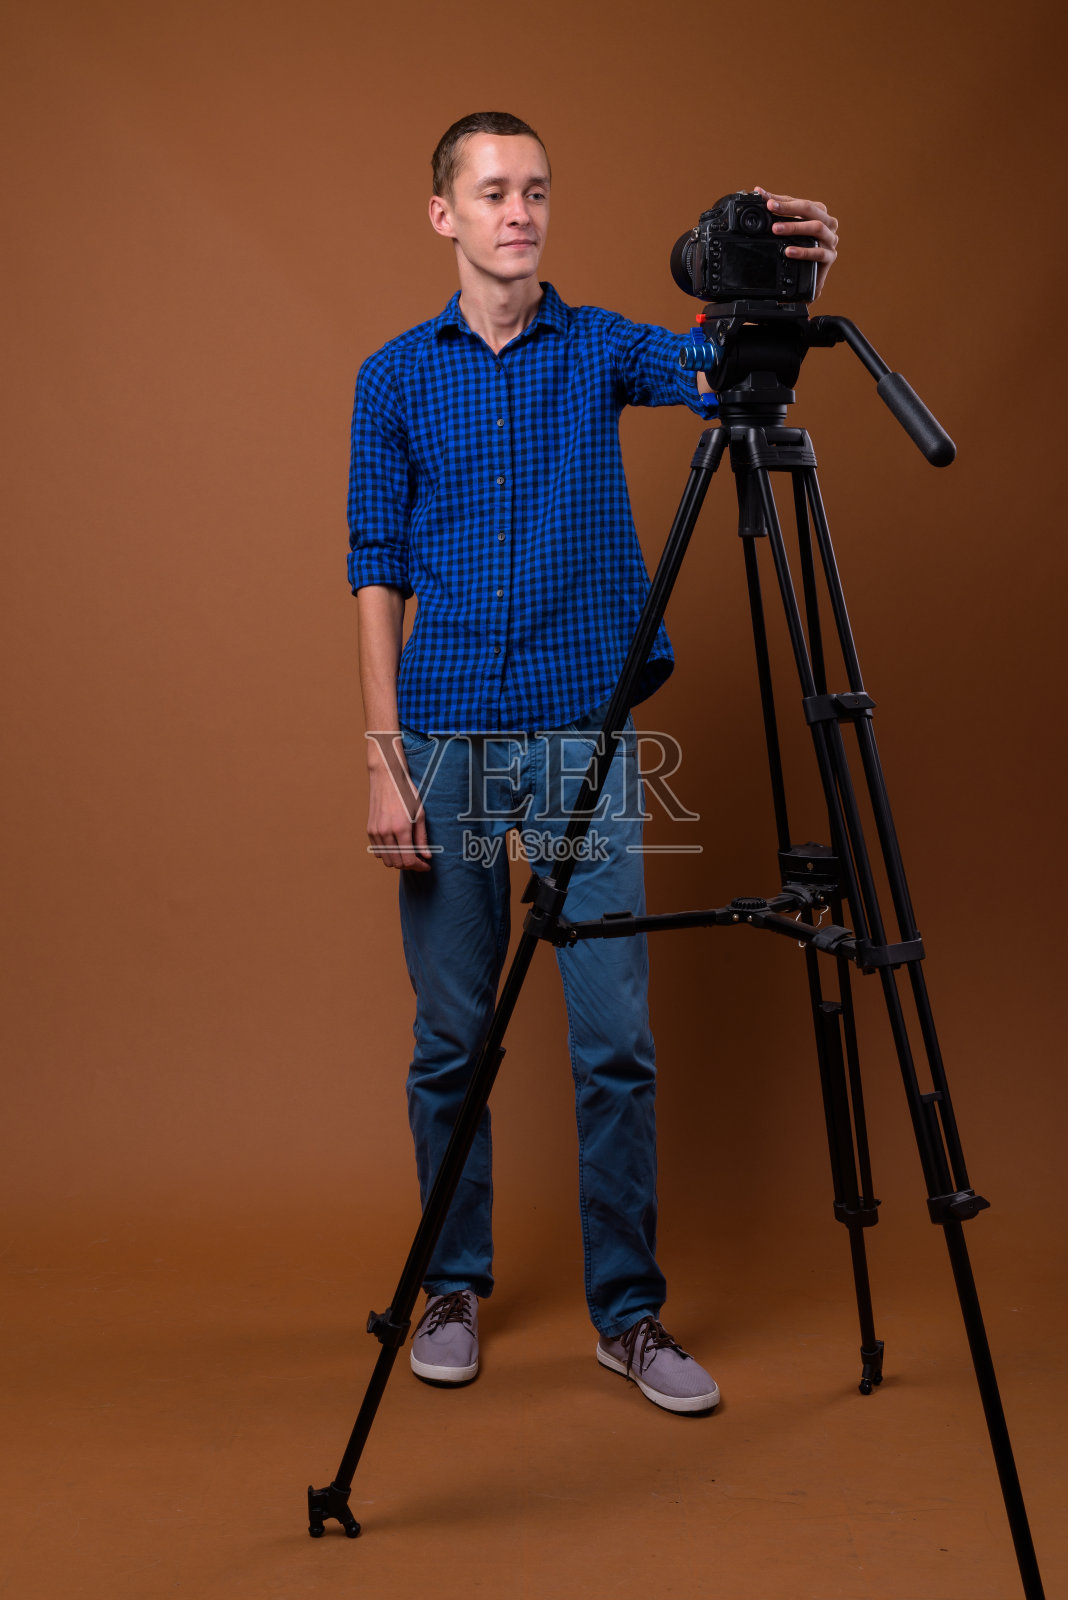 这是一个年轻人穿着蓝色格子衬衫准备在彩色背景下拍摄的视频照片摄影图片